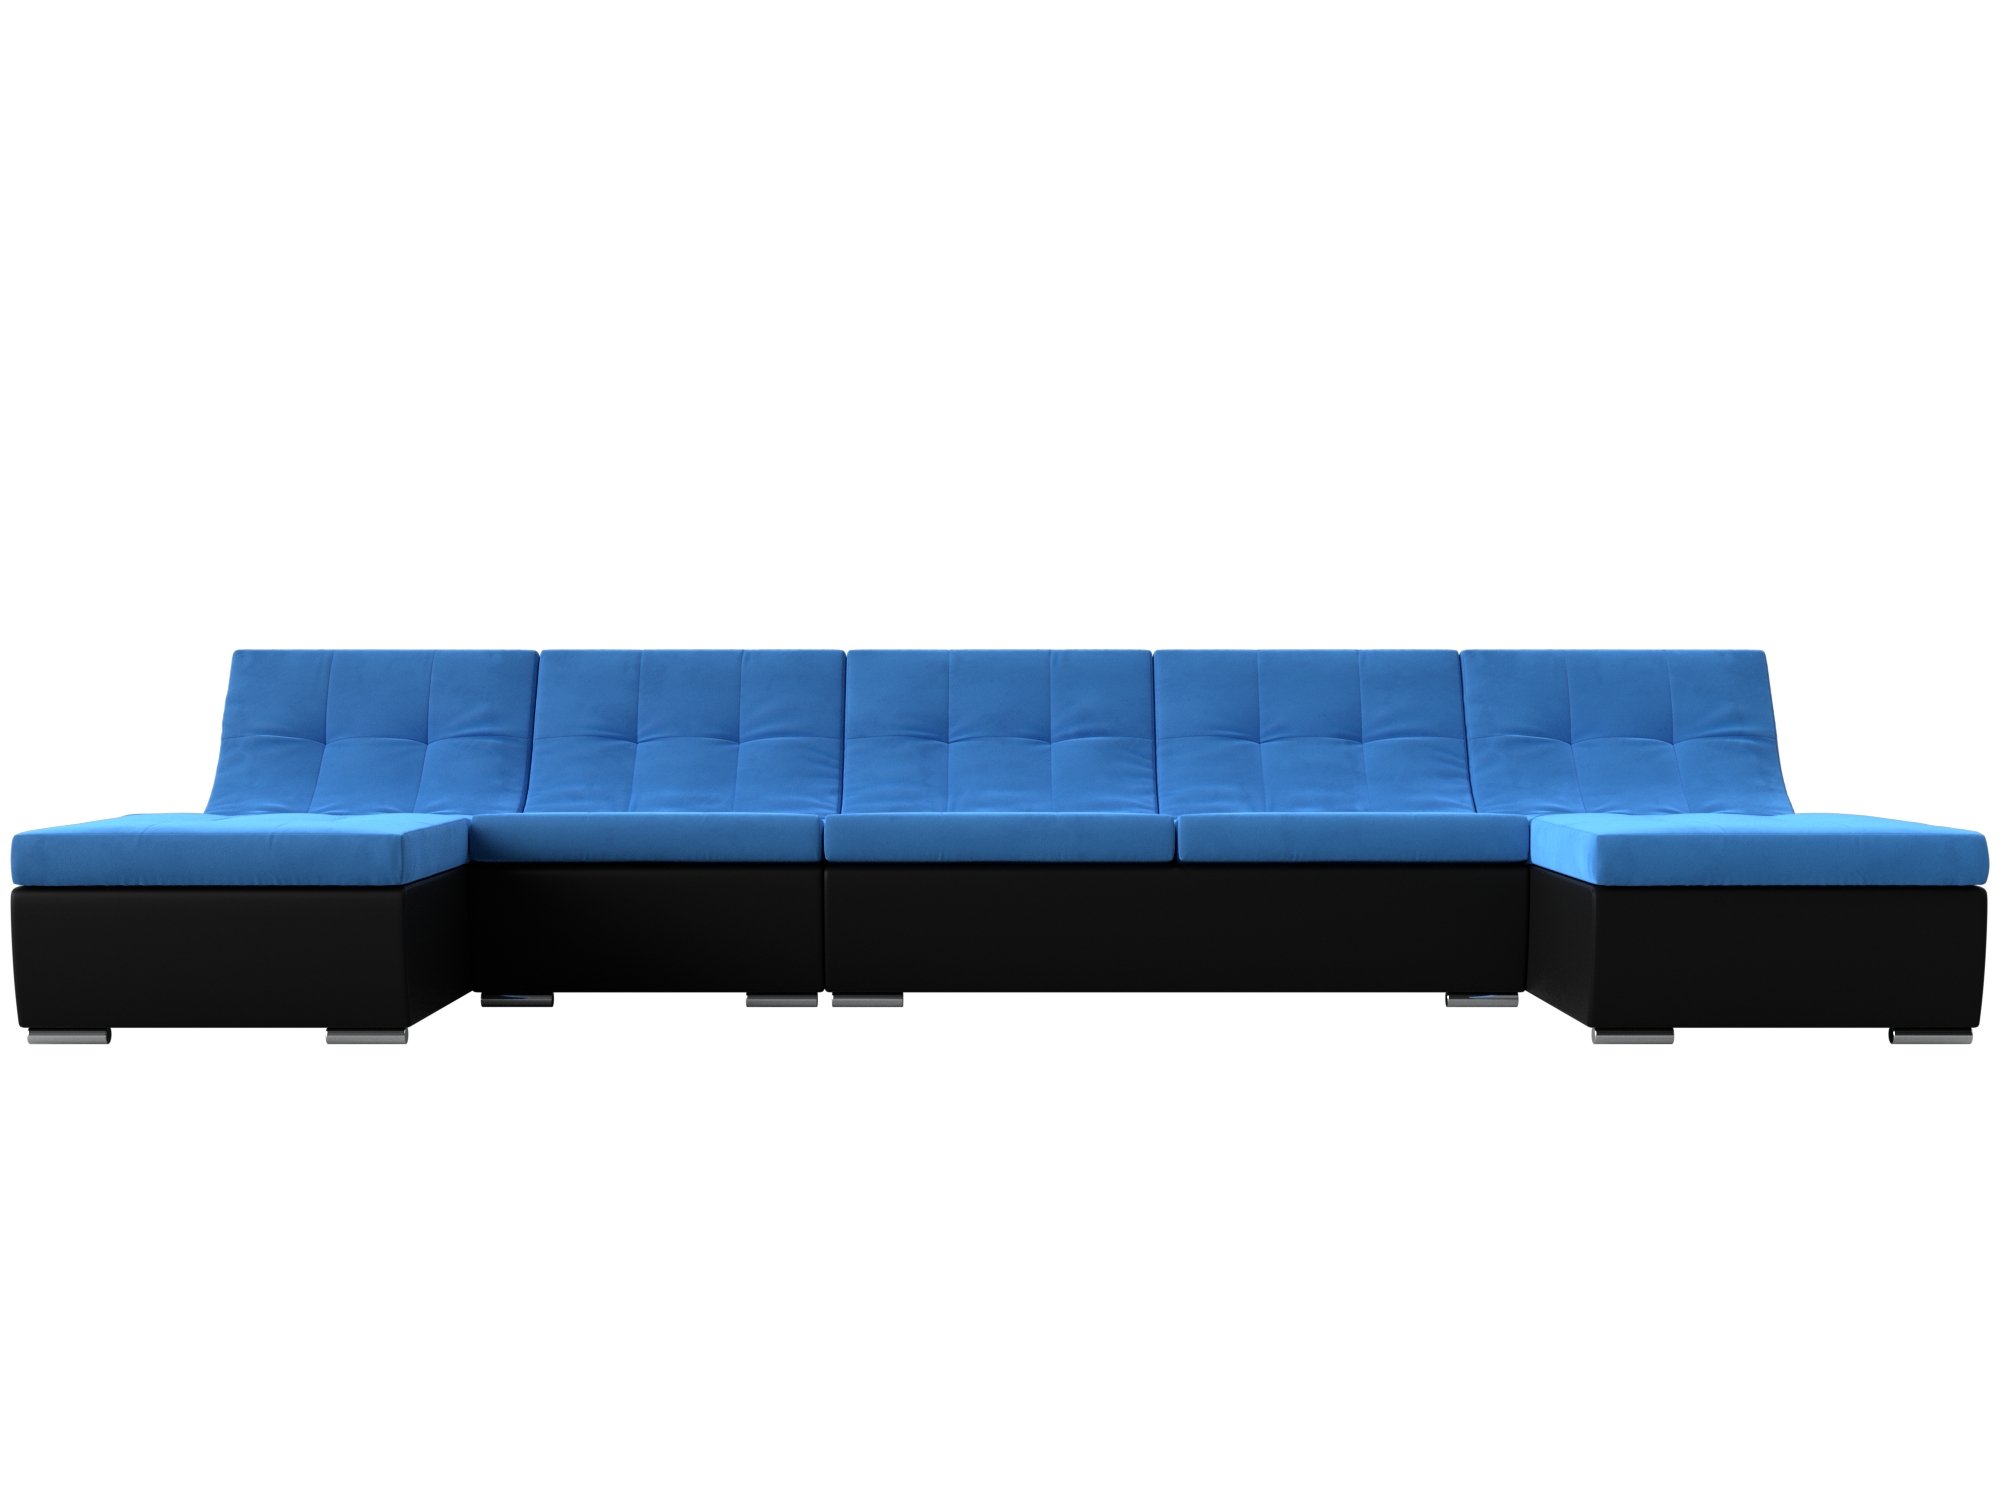 П-образный модульный диван Монреаль Long MebelVia Голубой, Черный, Велюр, Экокожа, ЛДСП диван п образный честер mebelvia голубой черный велюр лдсп